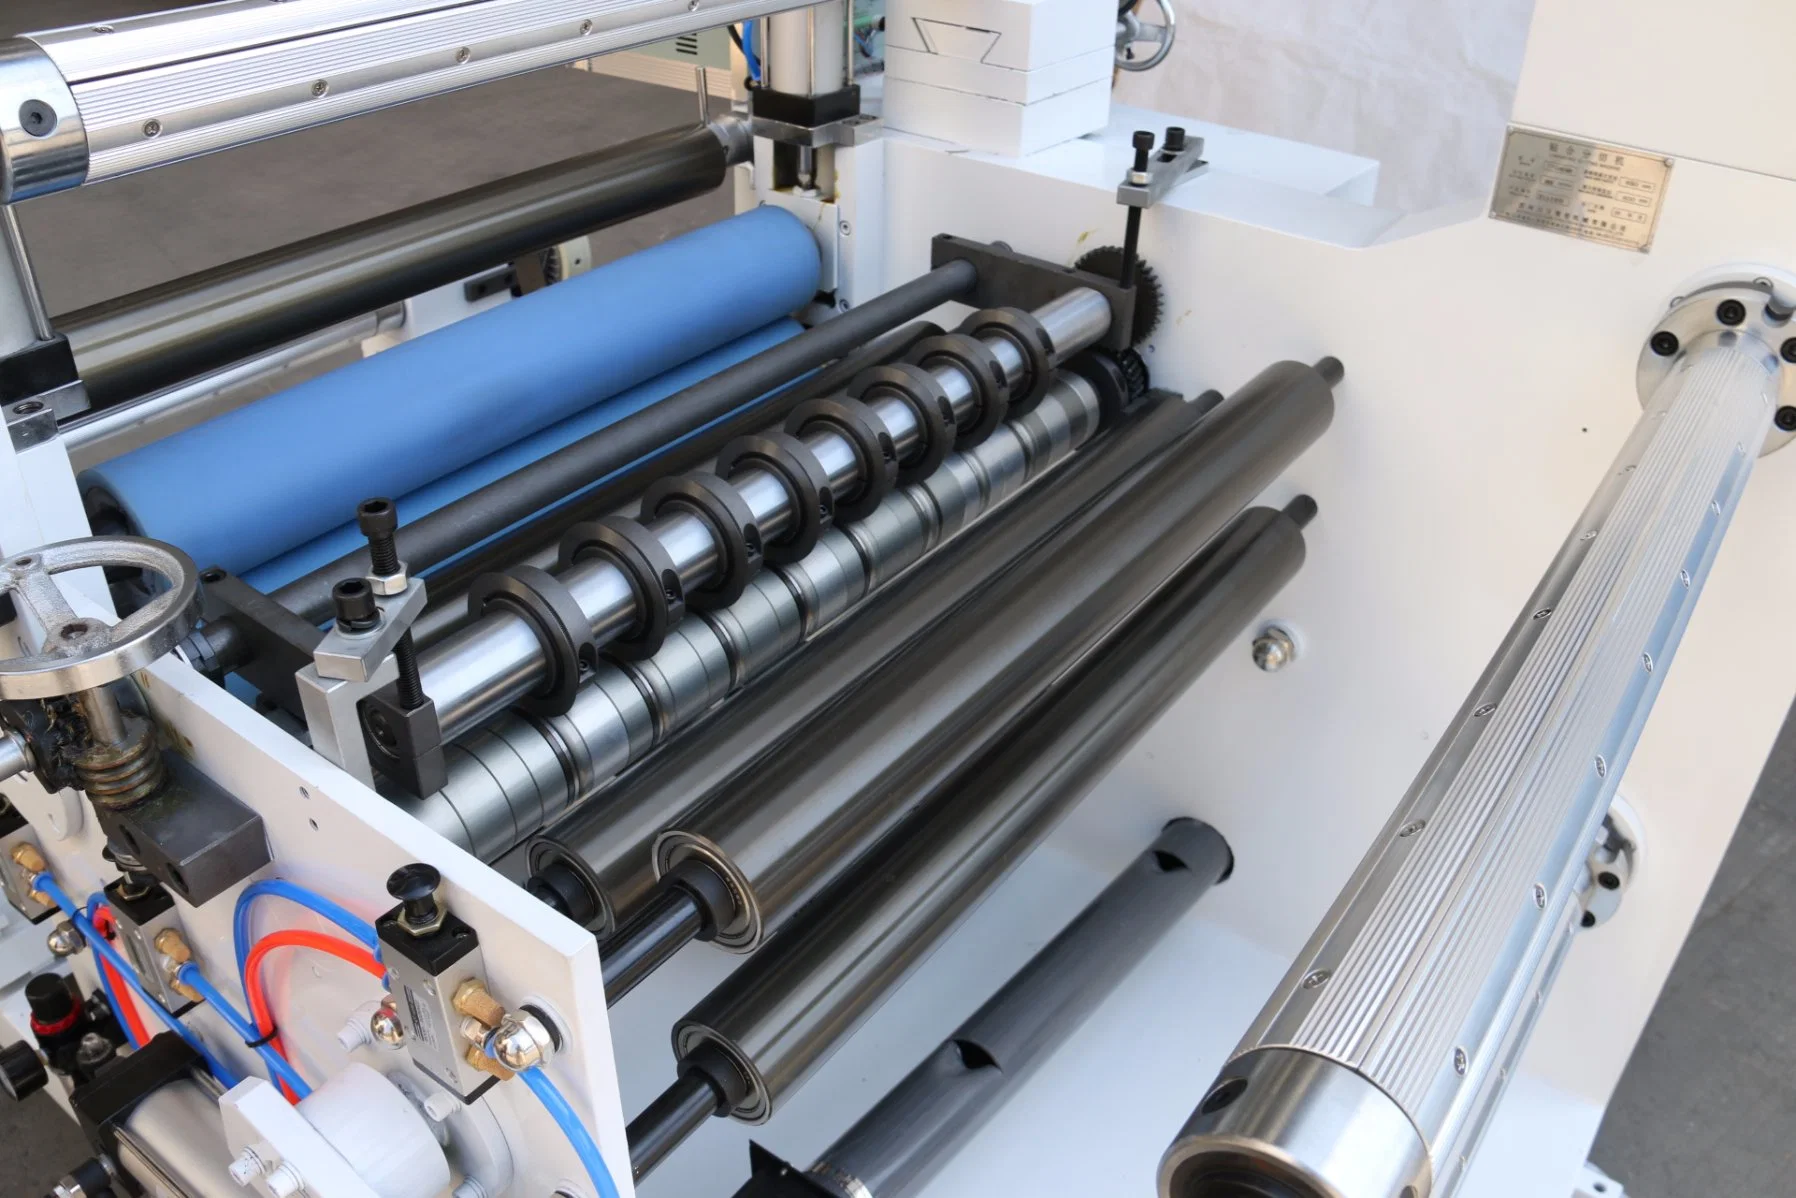 ماكينة لطي الورق المحكم الآلي بPLC الصناعية